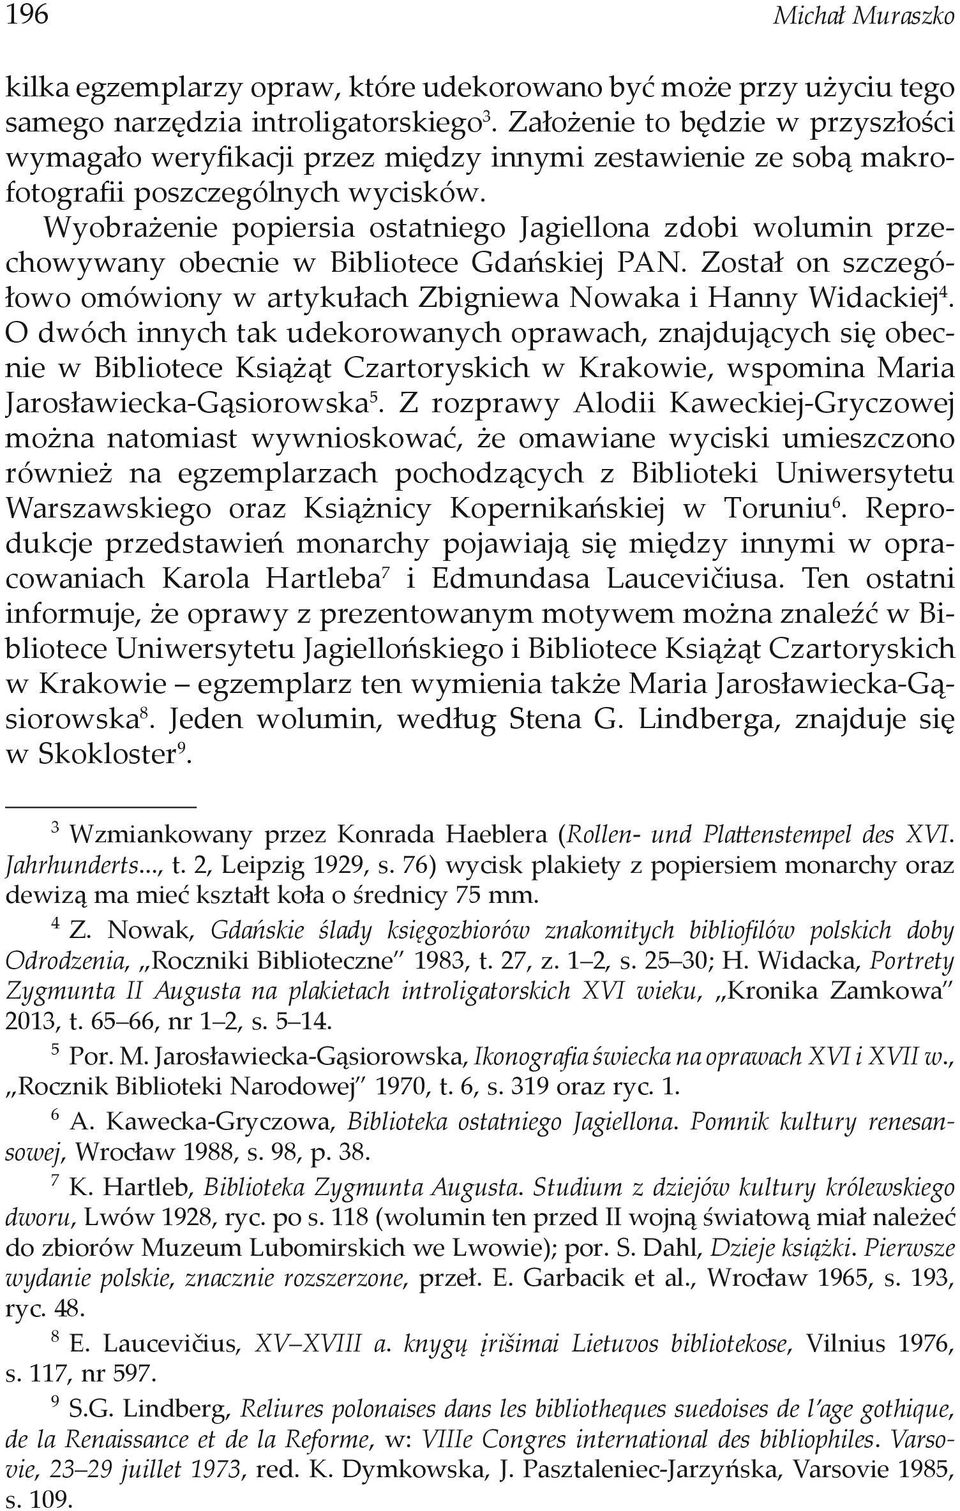 Wyobrażenie popiersia ostatniego Jagiellona zdobi wolumin przechowywany obecnie w Bibliotece Gdańskiej PAN. Został on szczegółowo omówiony w artykułach Zbigniewa Nowaka i Hanny Widackiej4.